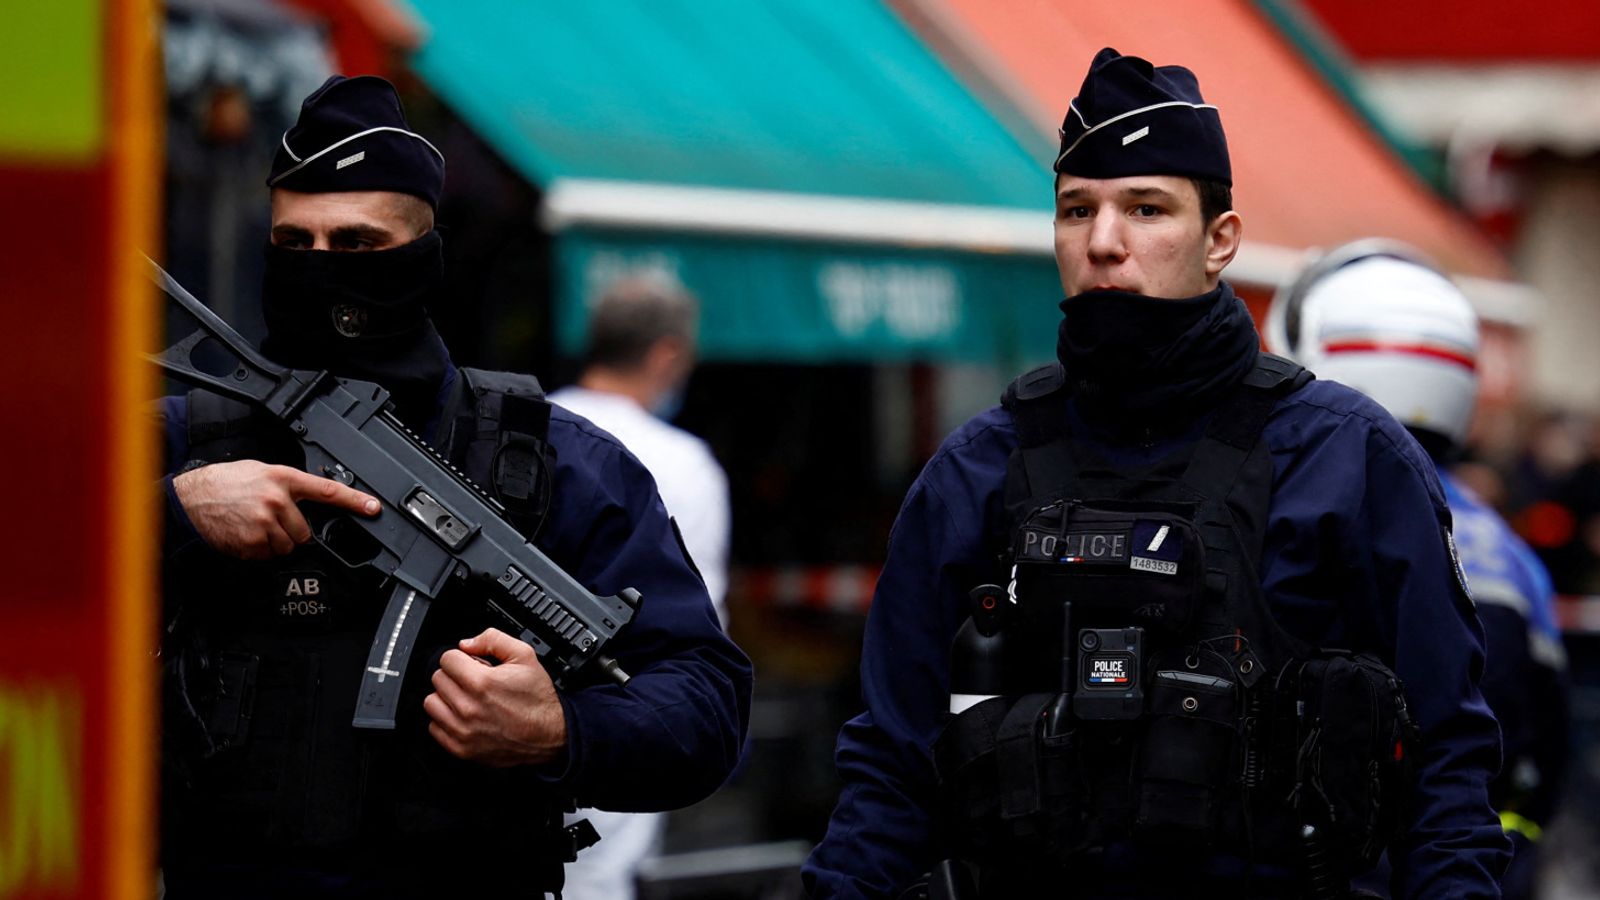 Ce que l’on sait de la fusillade de Paris |  Nouvelles du monde